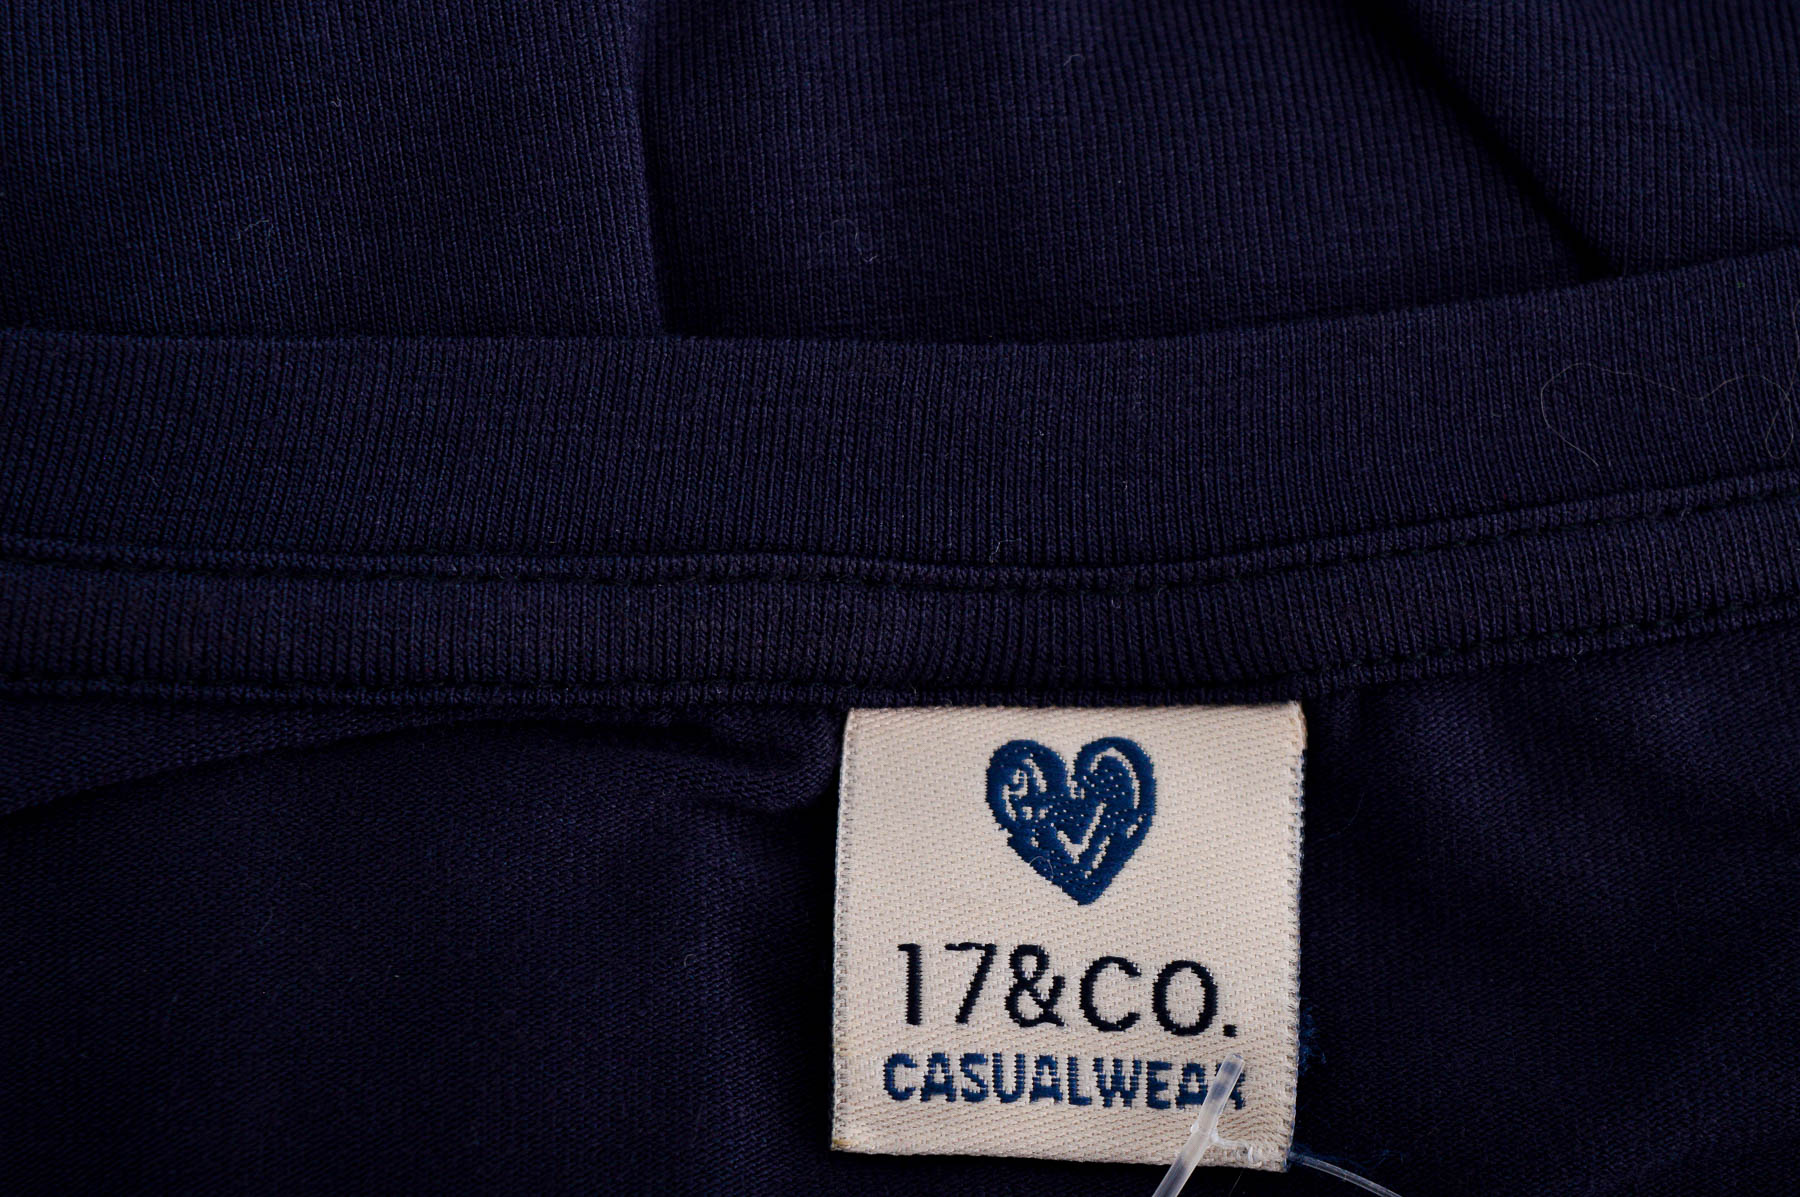 Γυναικεία μπλούζα - 17&CO. CASUALWEAR - 2